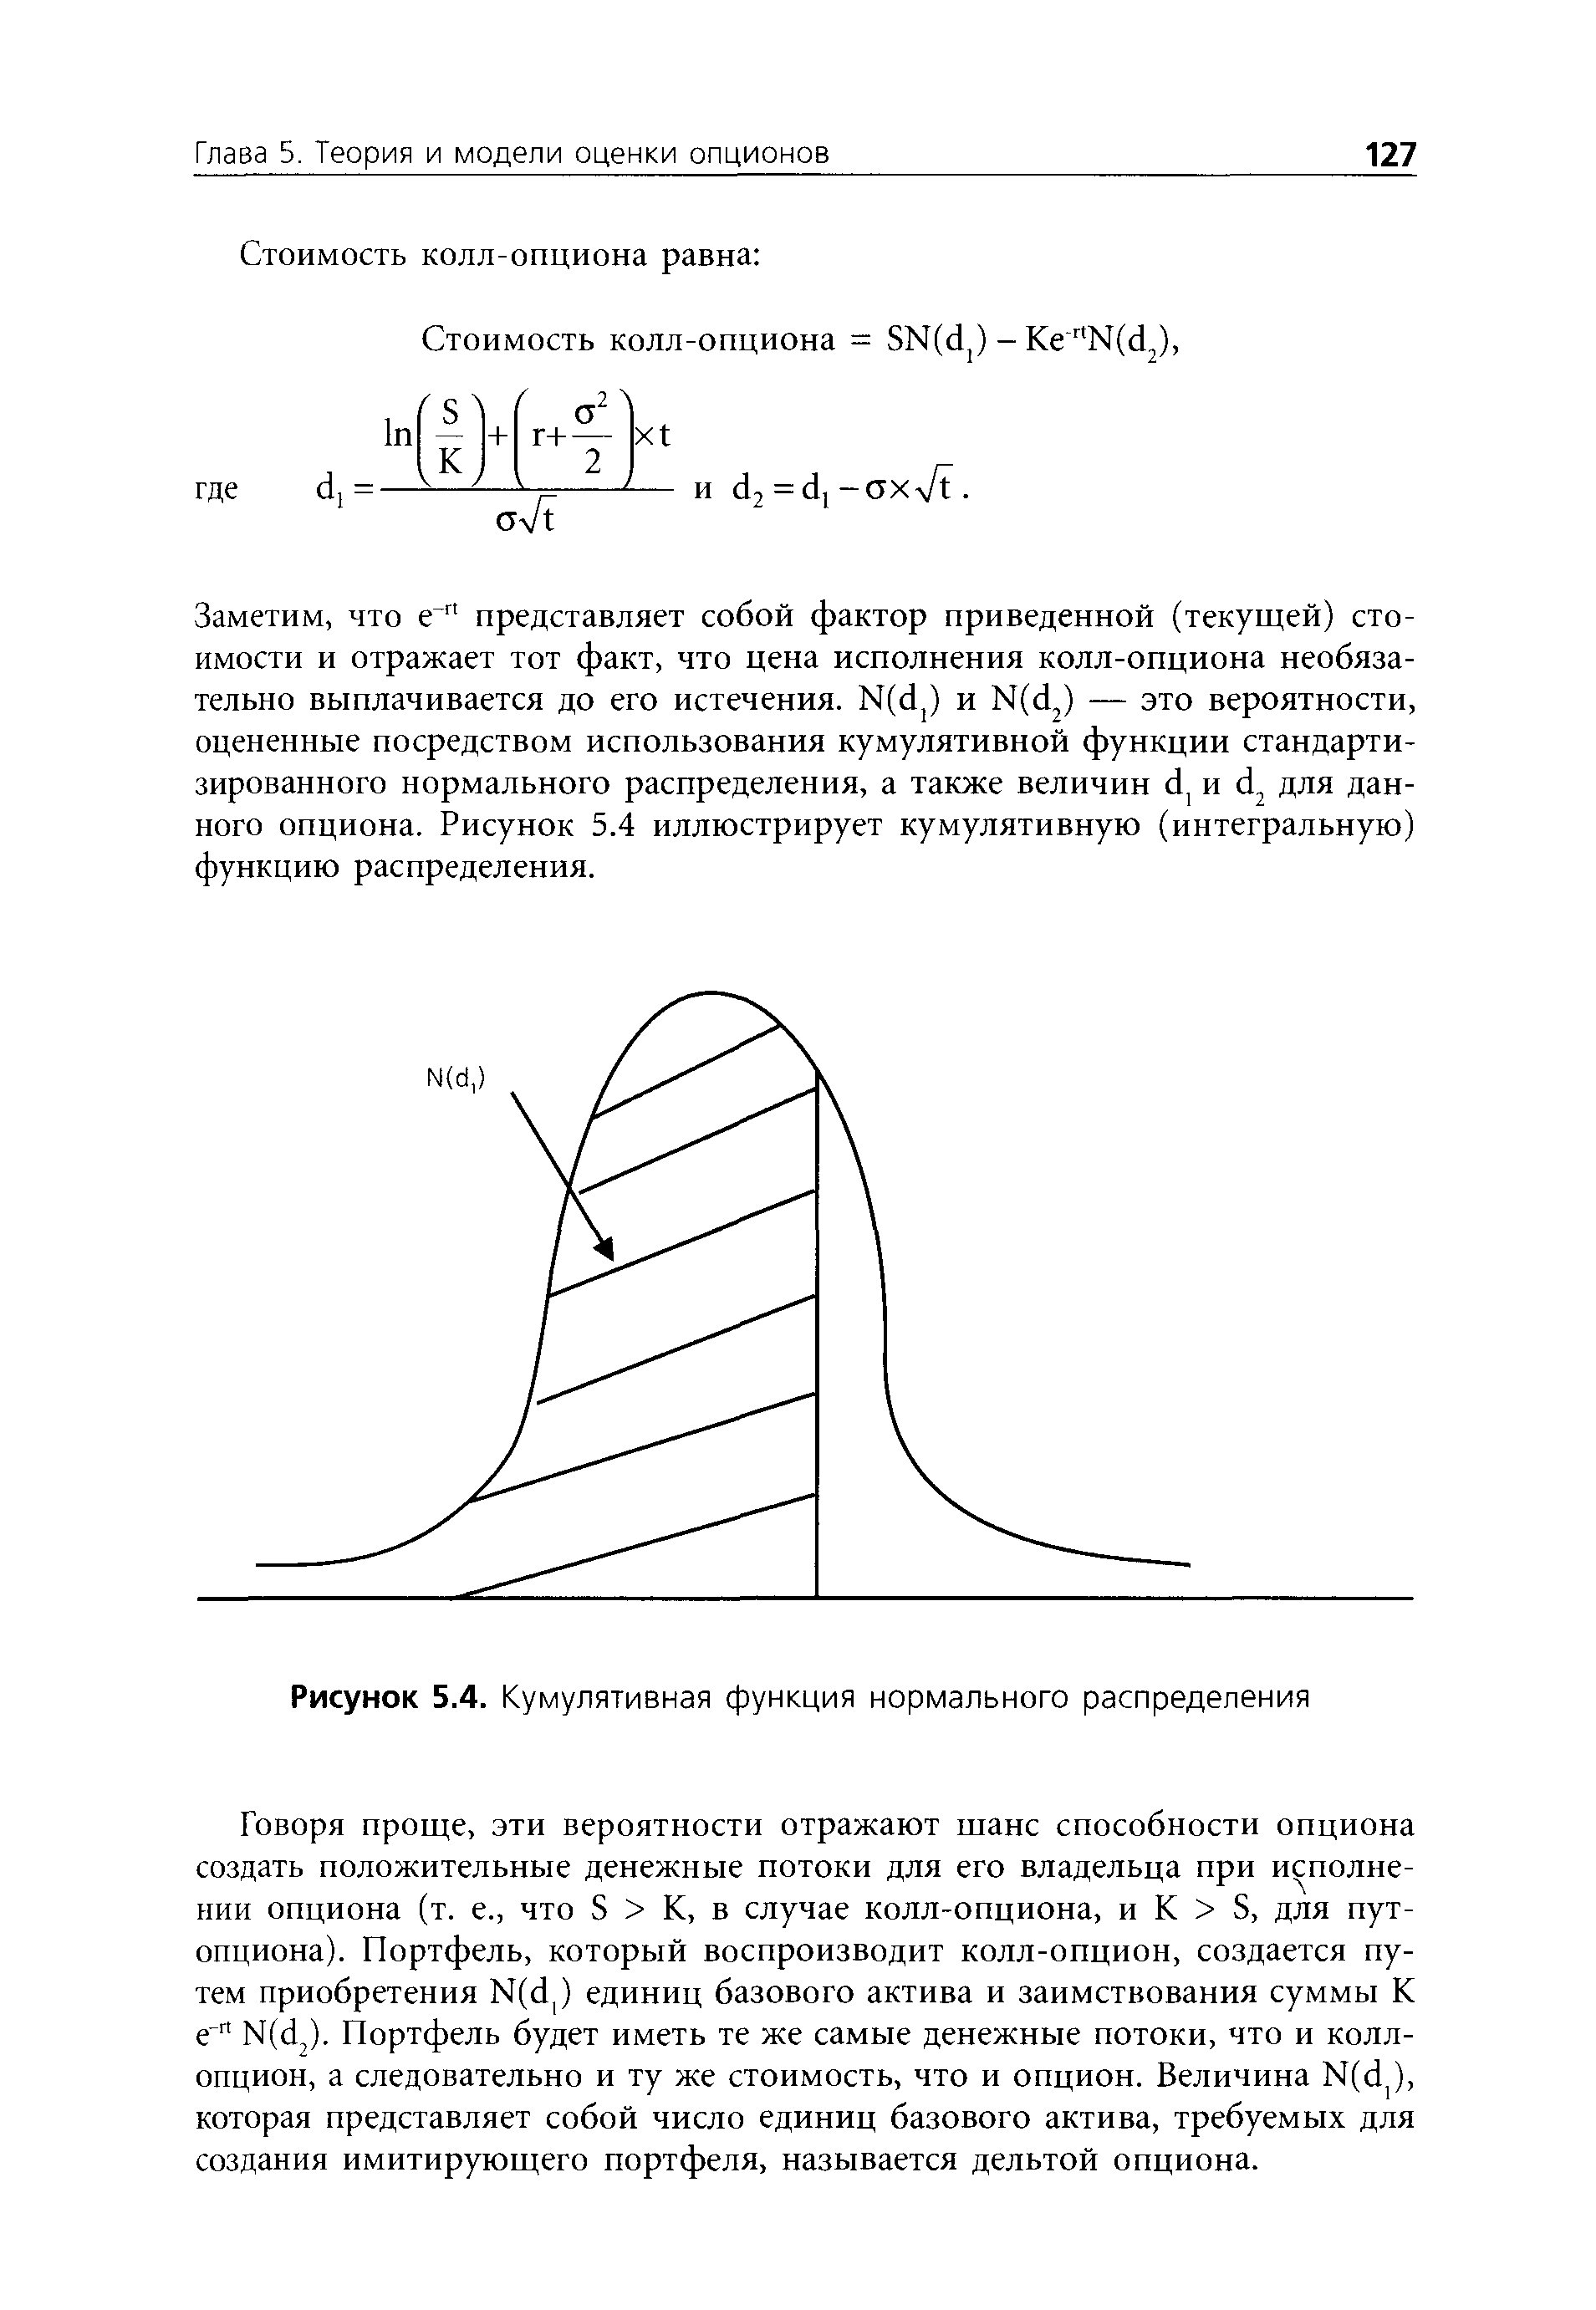 Рисунок 5.4. Кумулятивная функция нормального распределения
